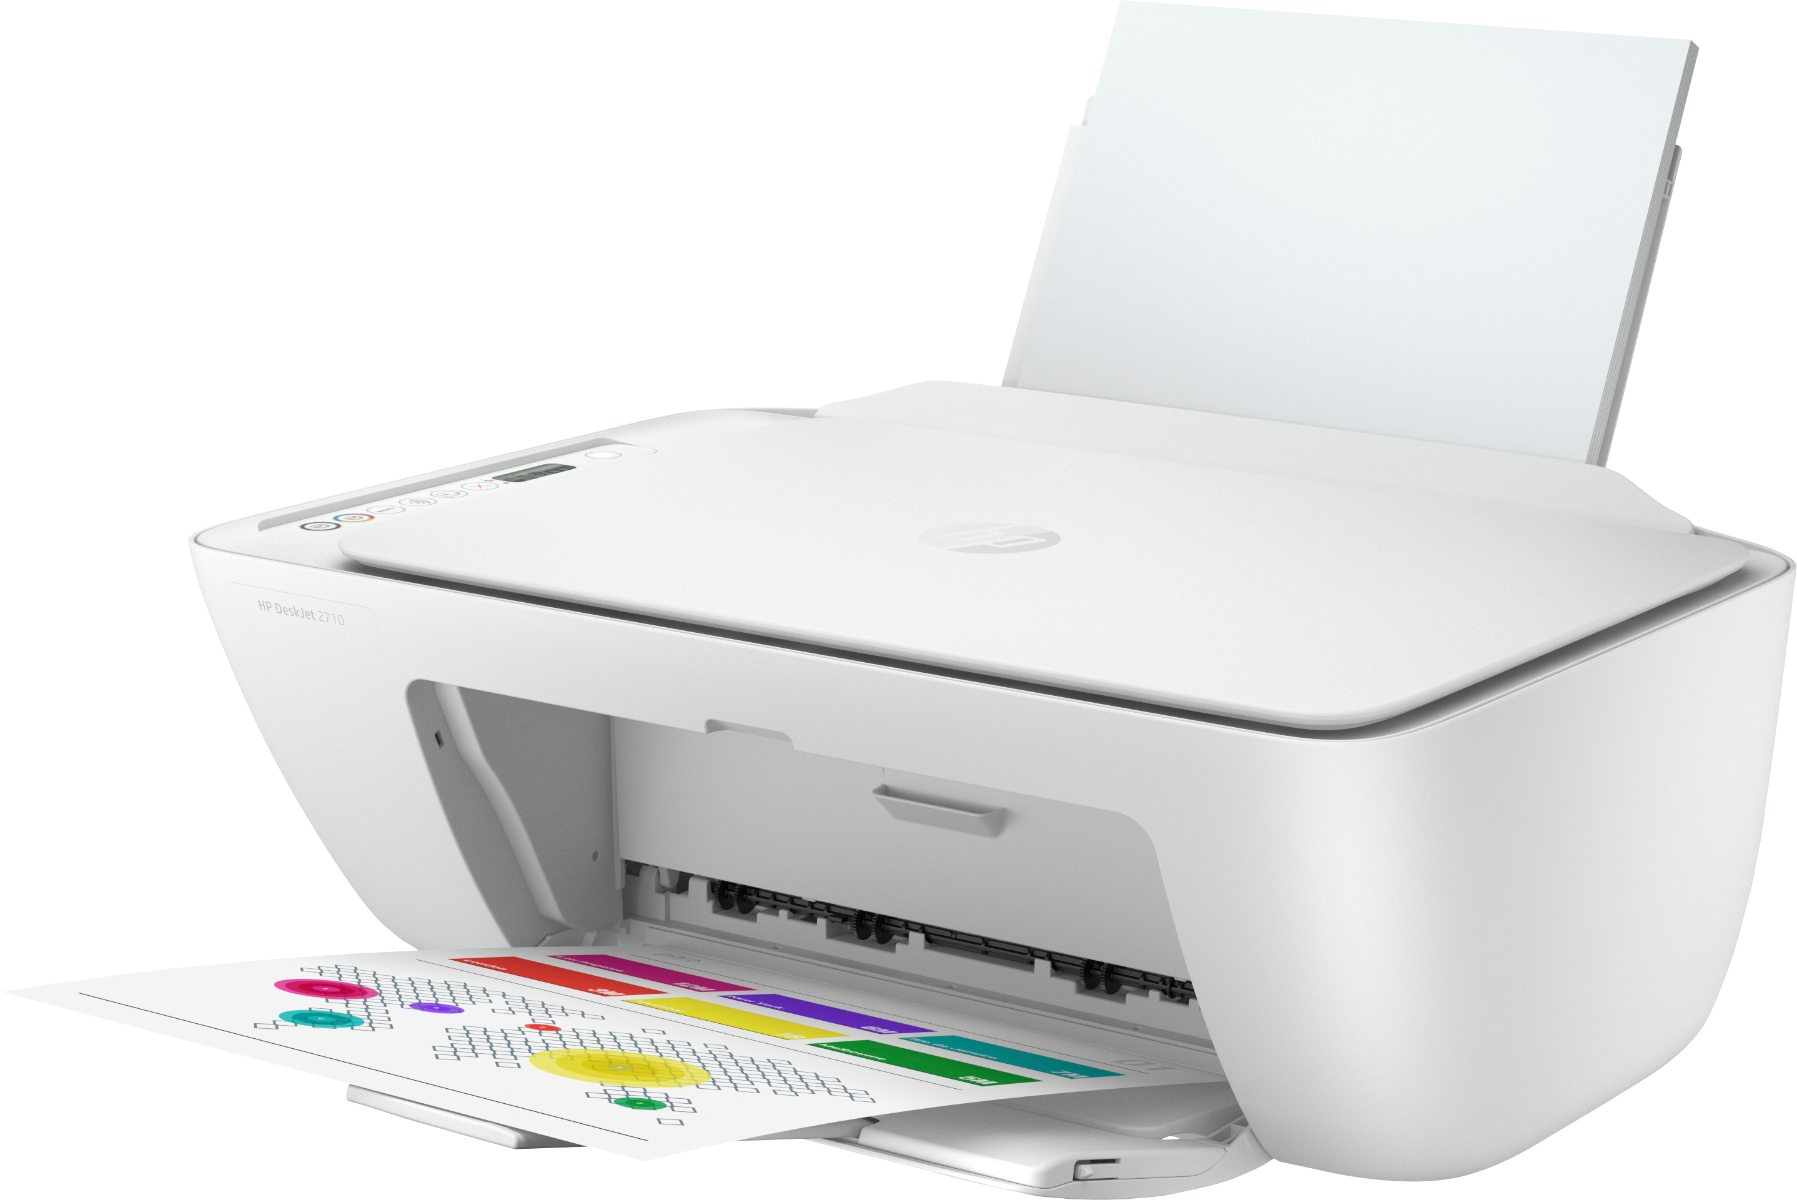 Multifunctional inkjet color HP Deskjet 2710 All-in-One, Wireless, A4, Alb